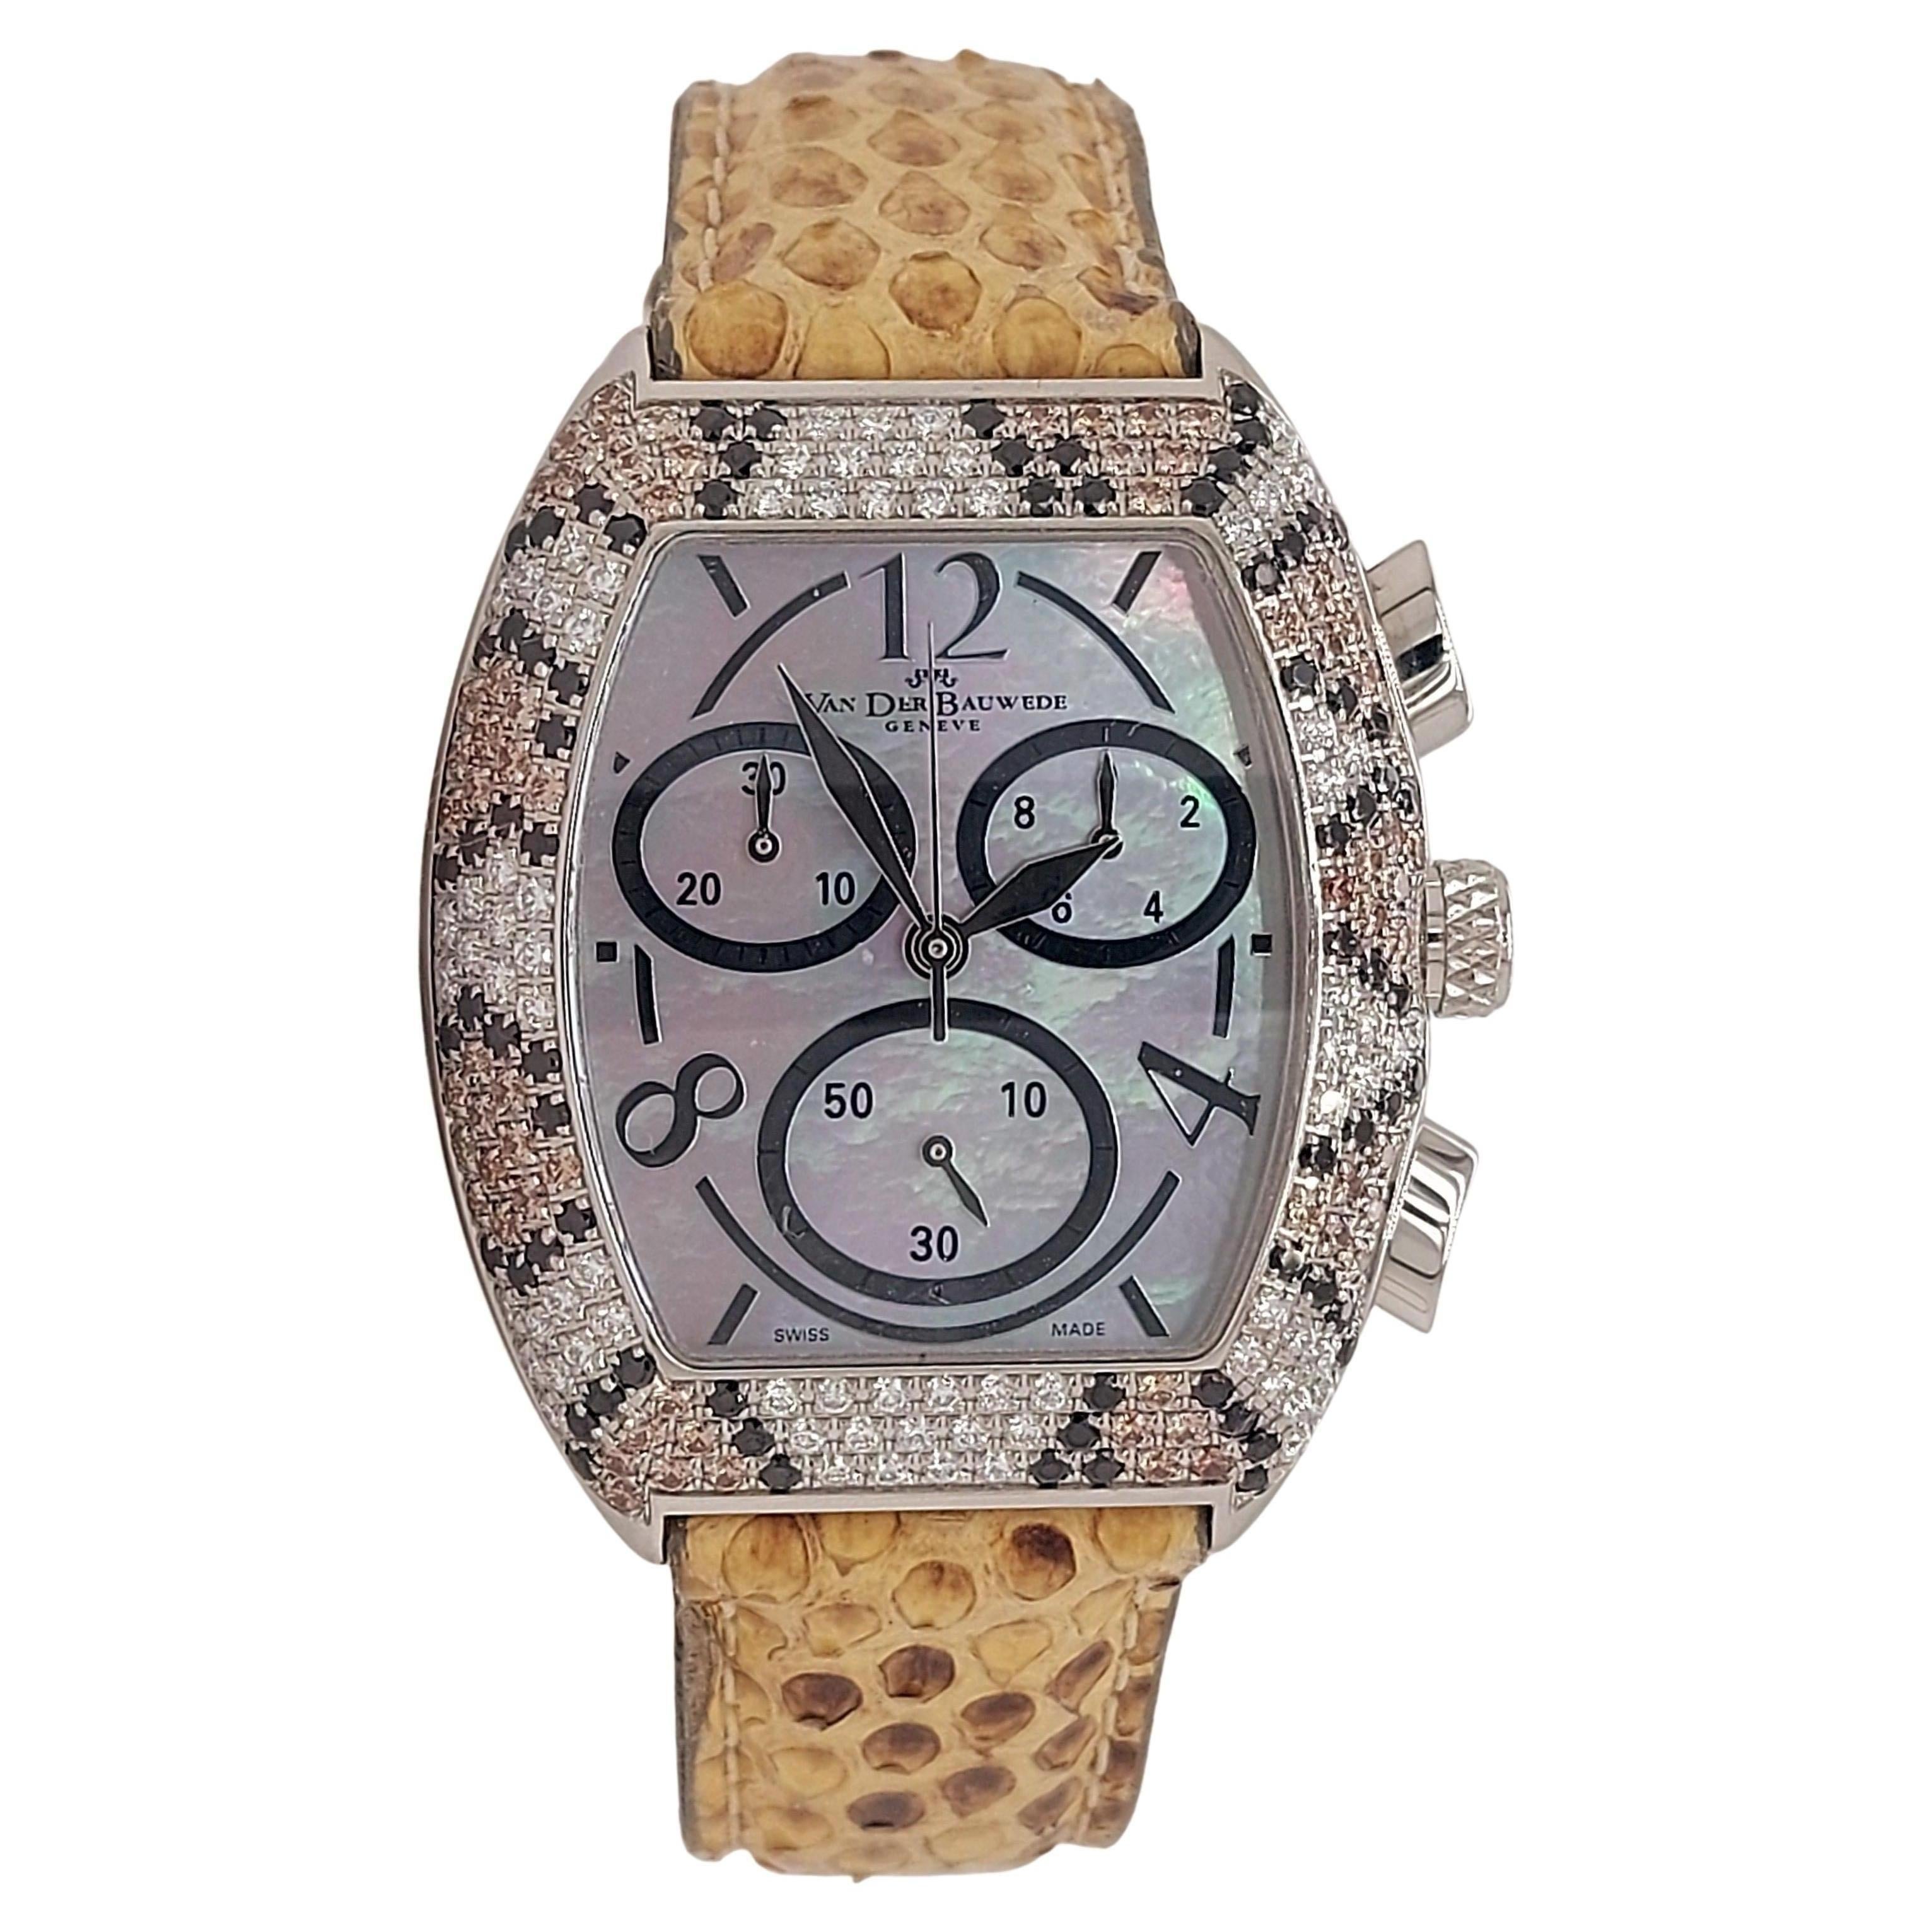 Van der Bauwede Magnum XS Chronograph Watch, Black, Cognac & White Diamonds For Sale